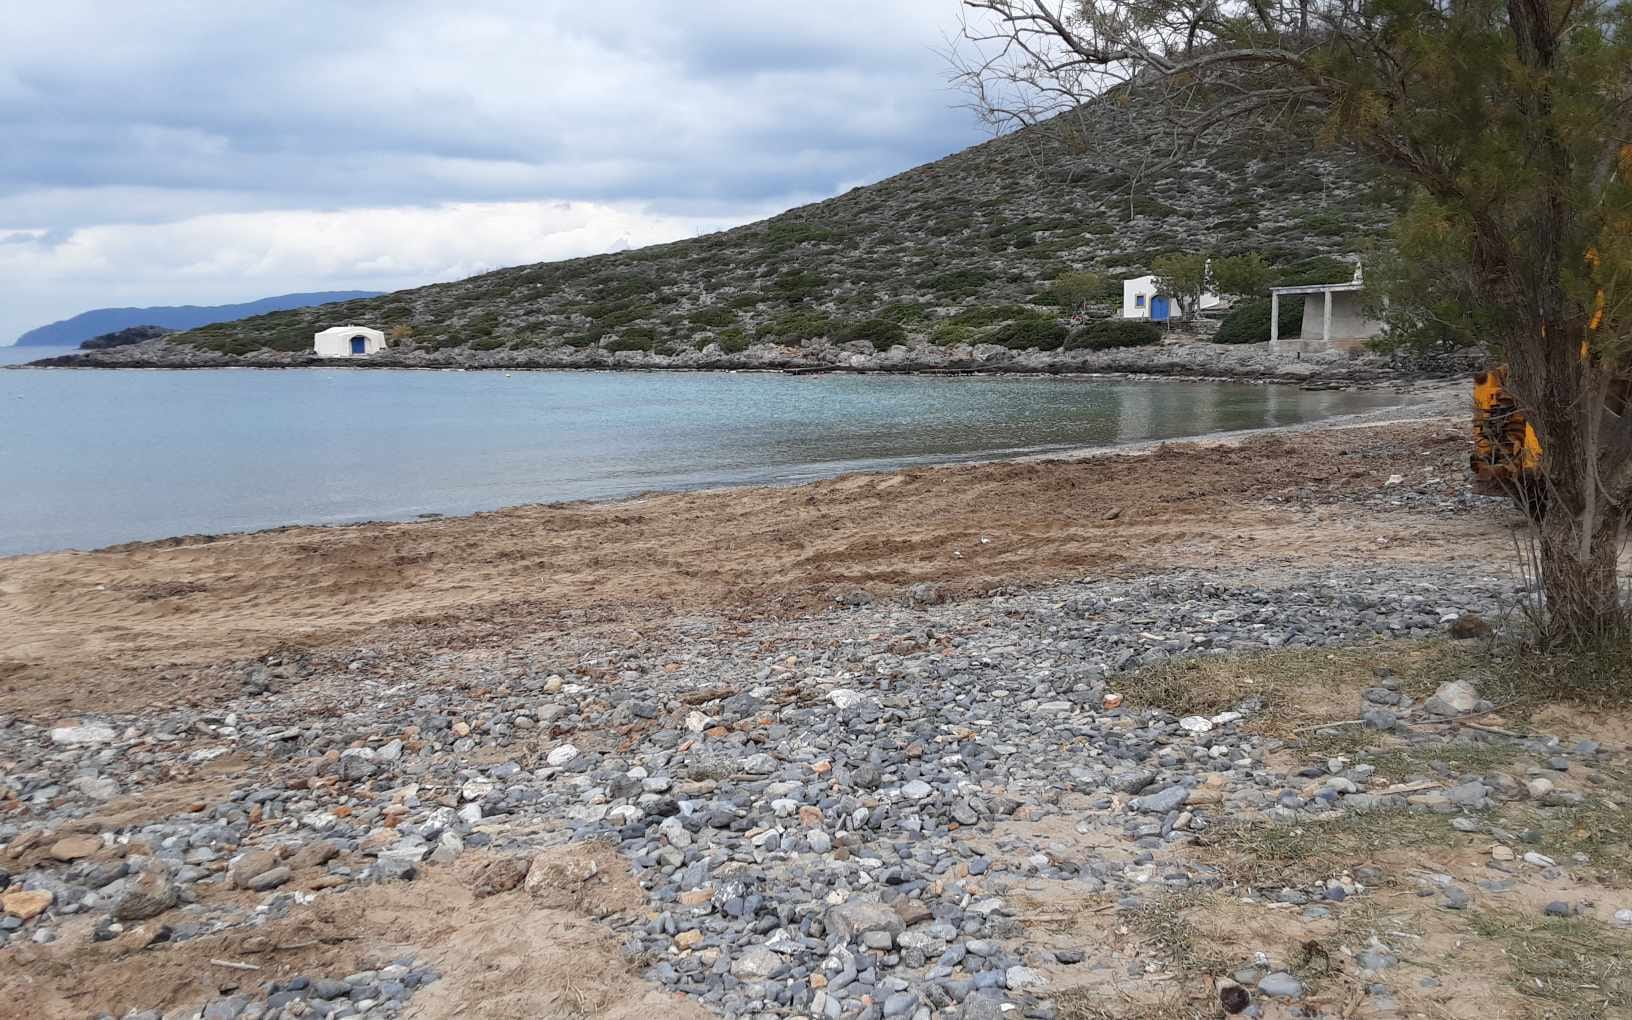 Καθαρισμός της παραλίας Λιμνιώνας στα Κύθηρα